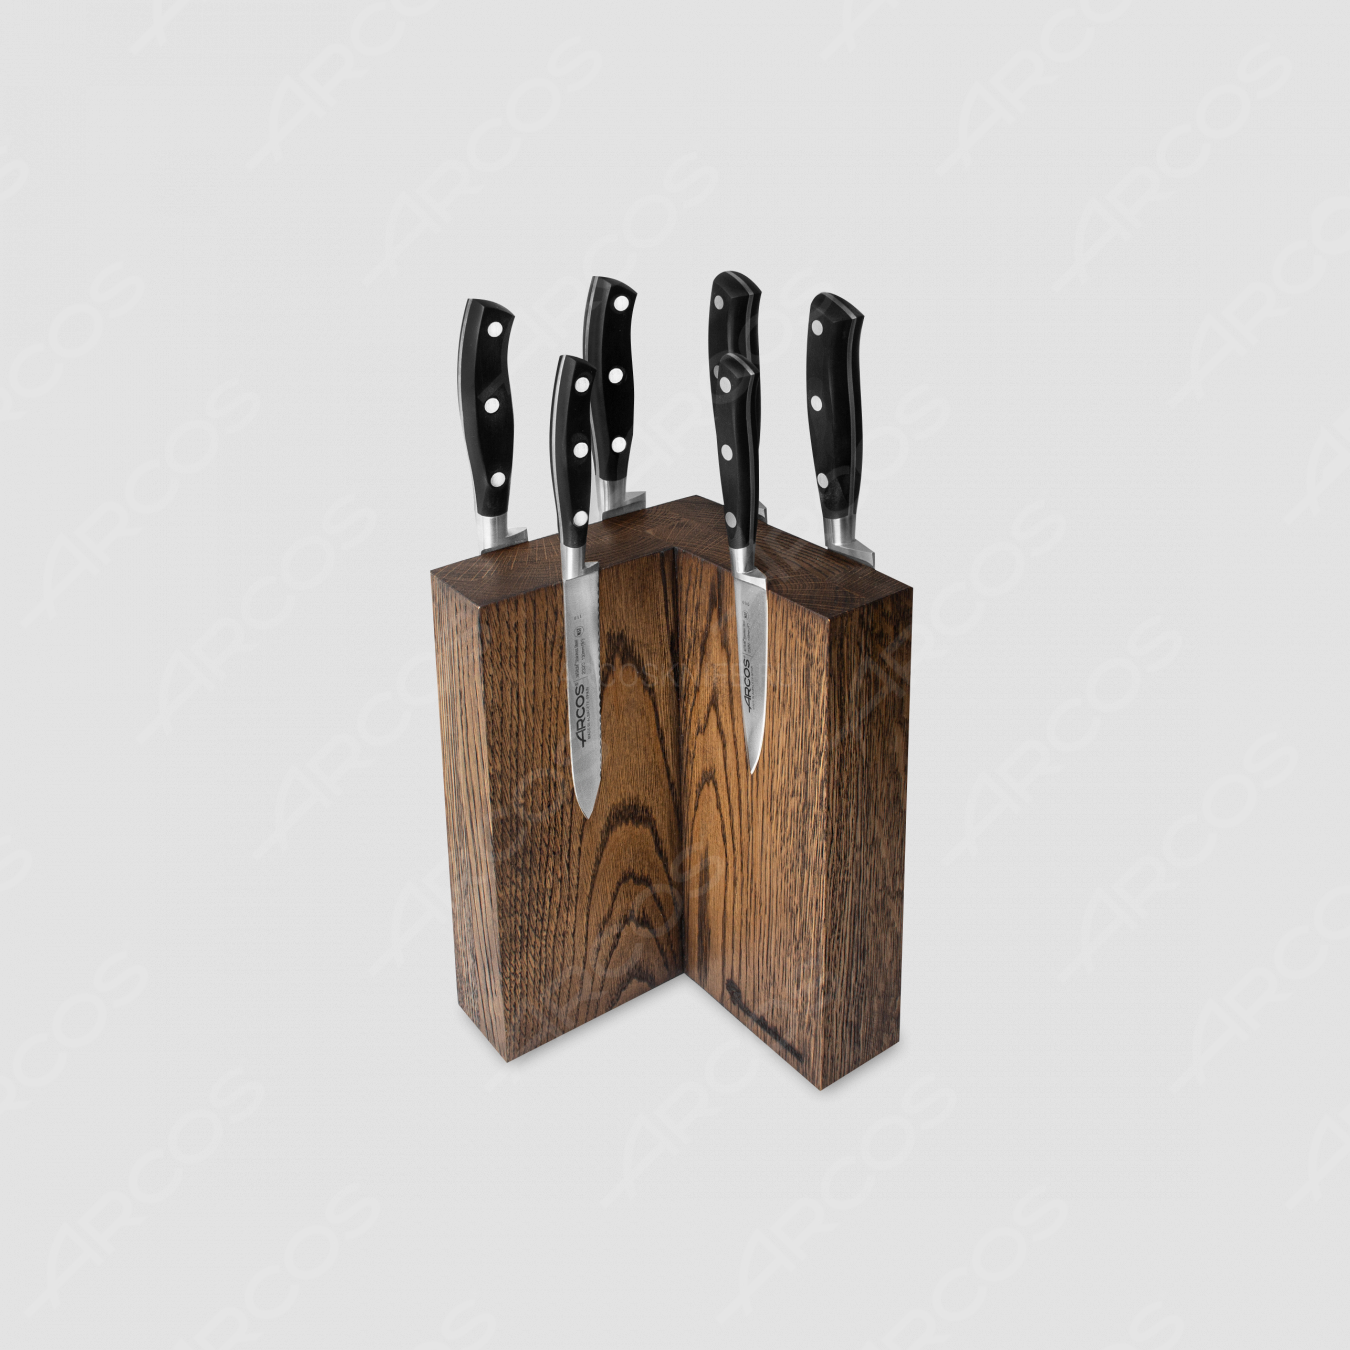 Набор из 6-ти кухонных ножей на подставке из дуба, серия Riviera, ARCOS, Испания